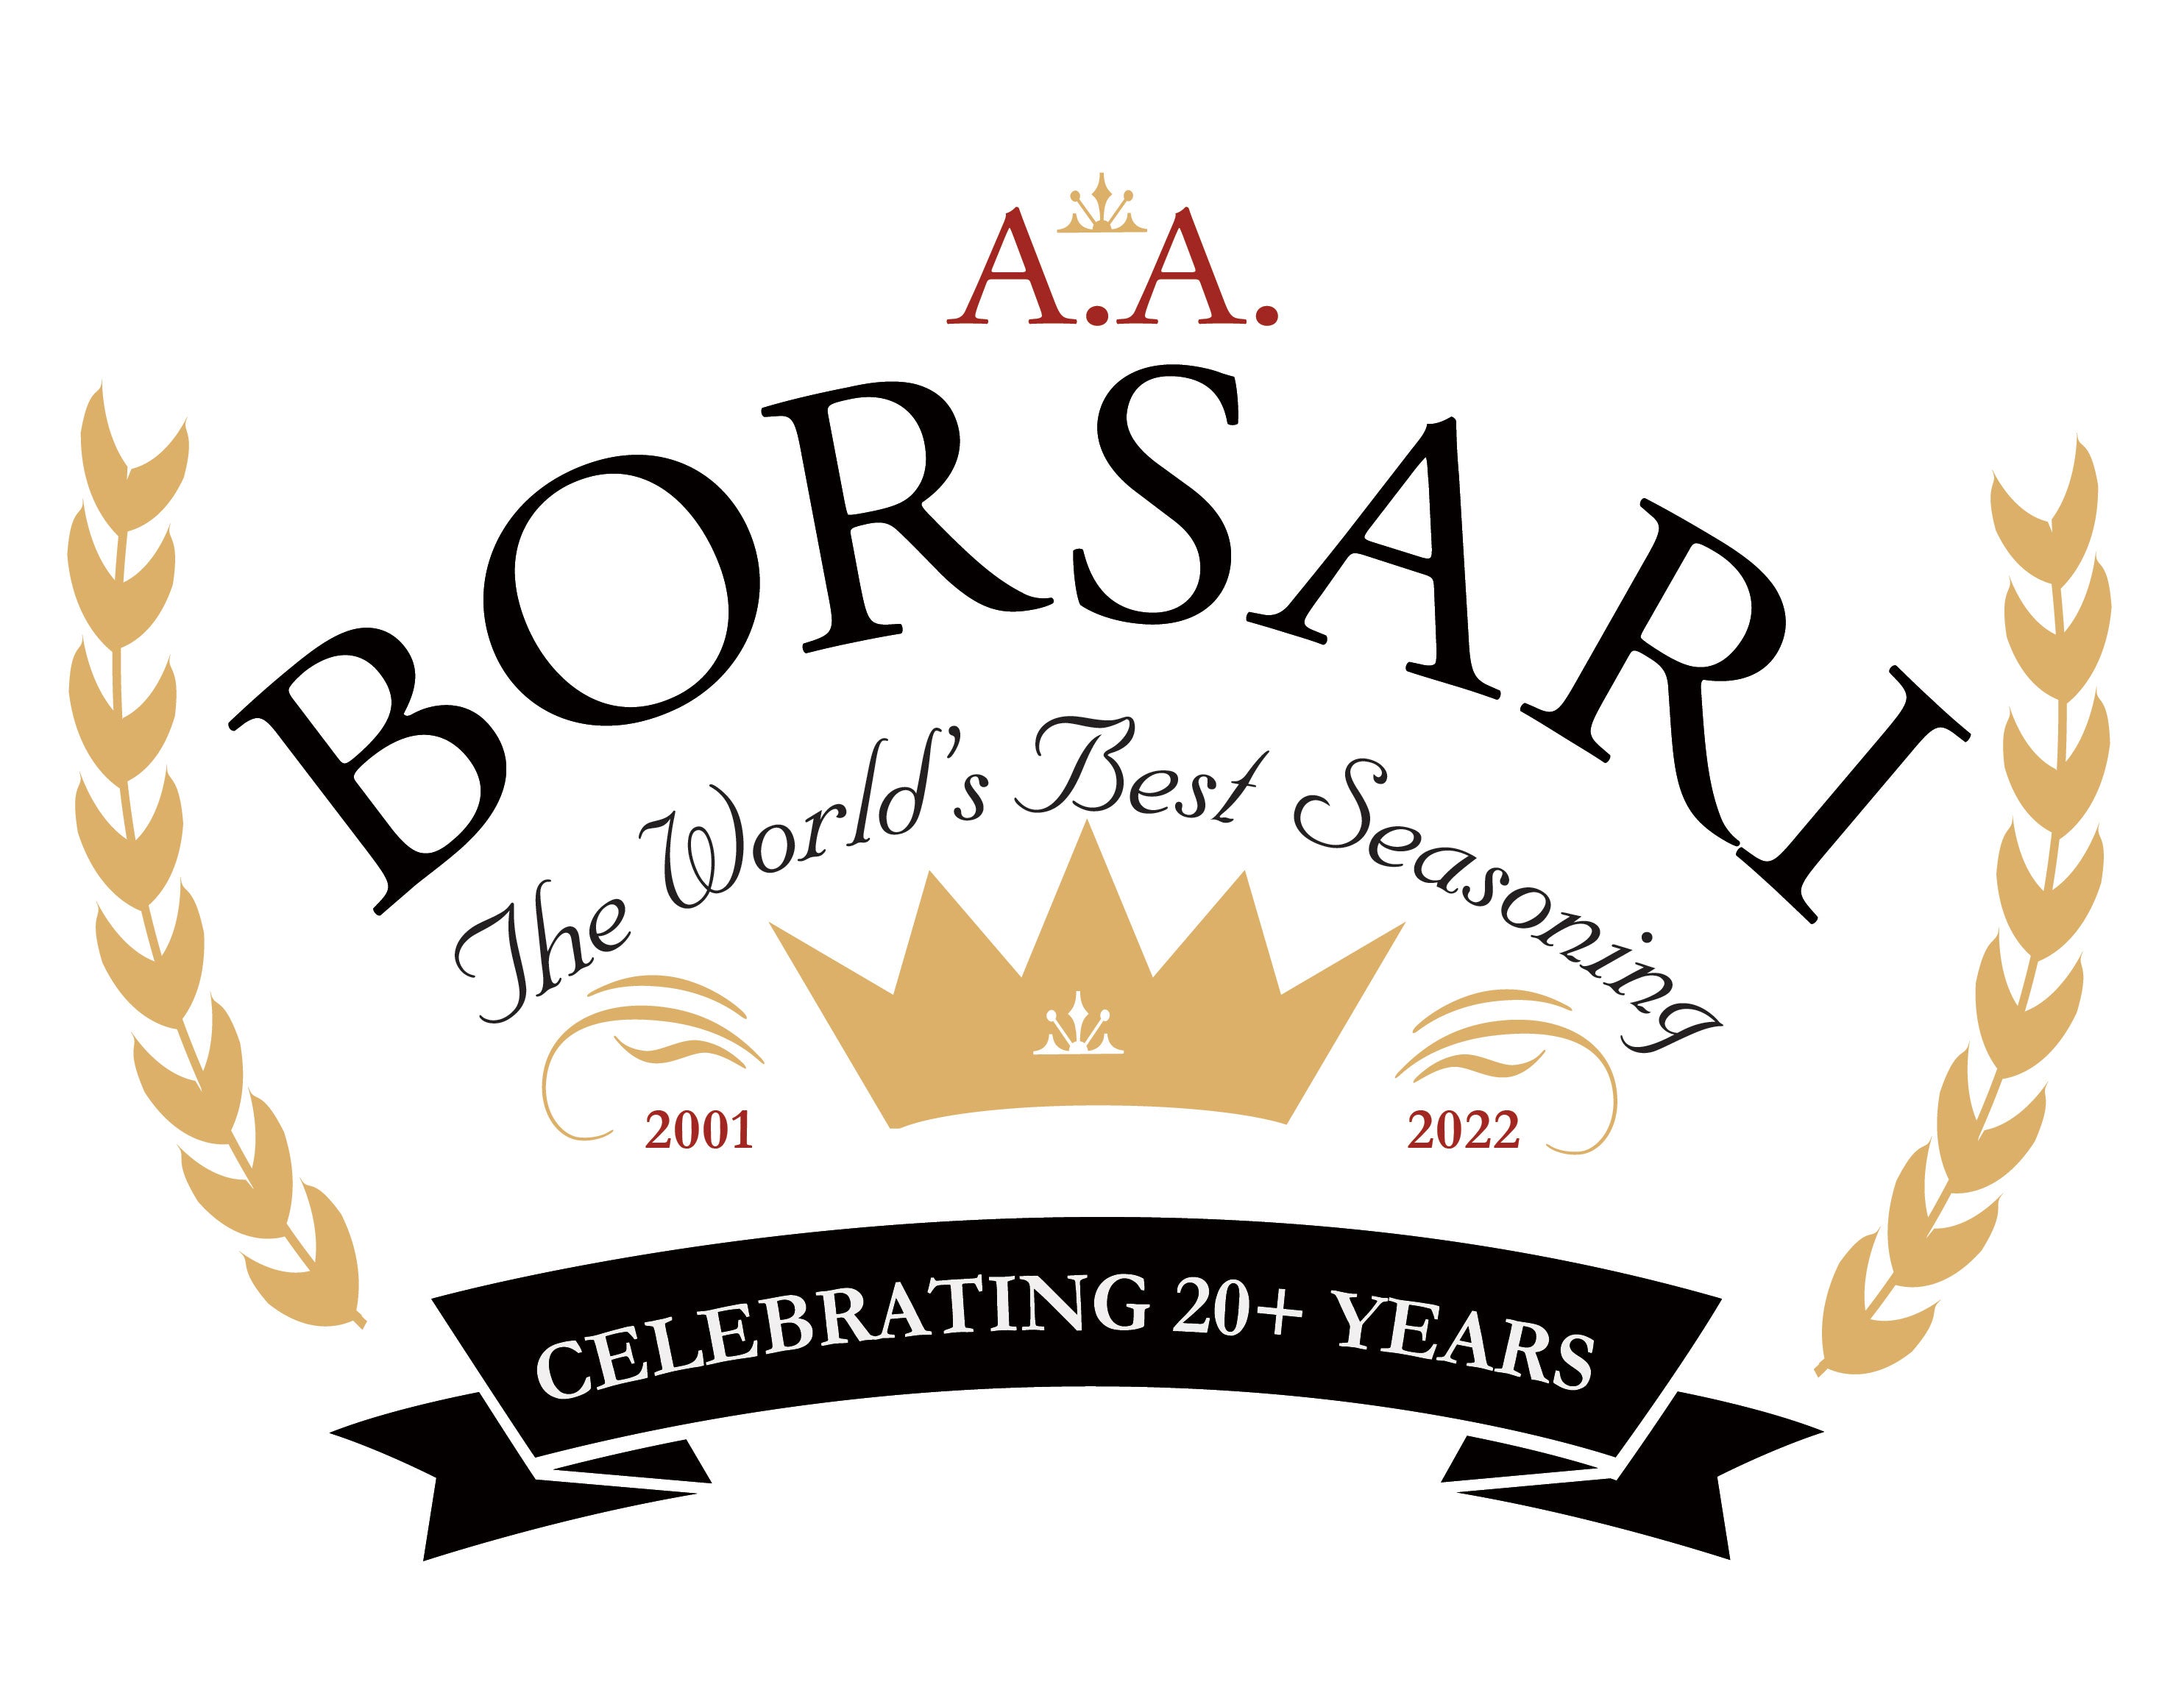 Borsari Grande Seasonings – Borsari Food Company